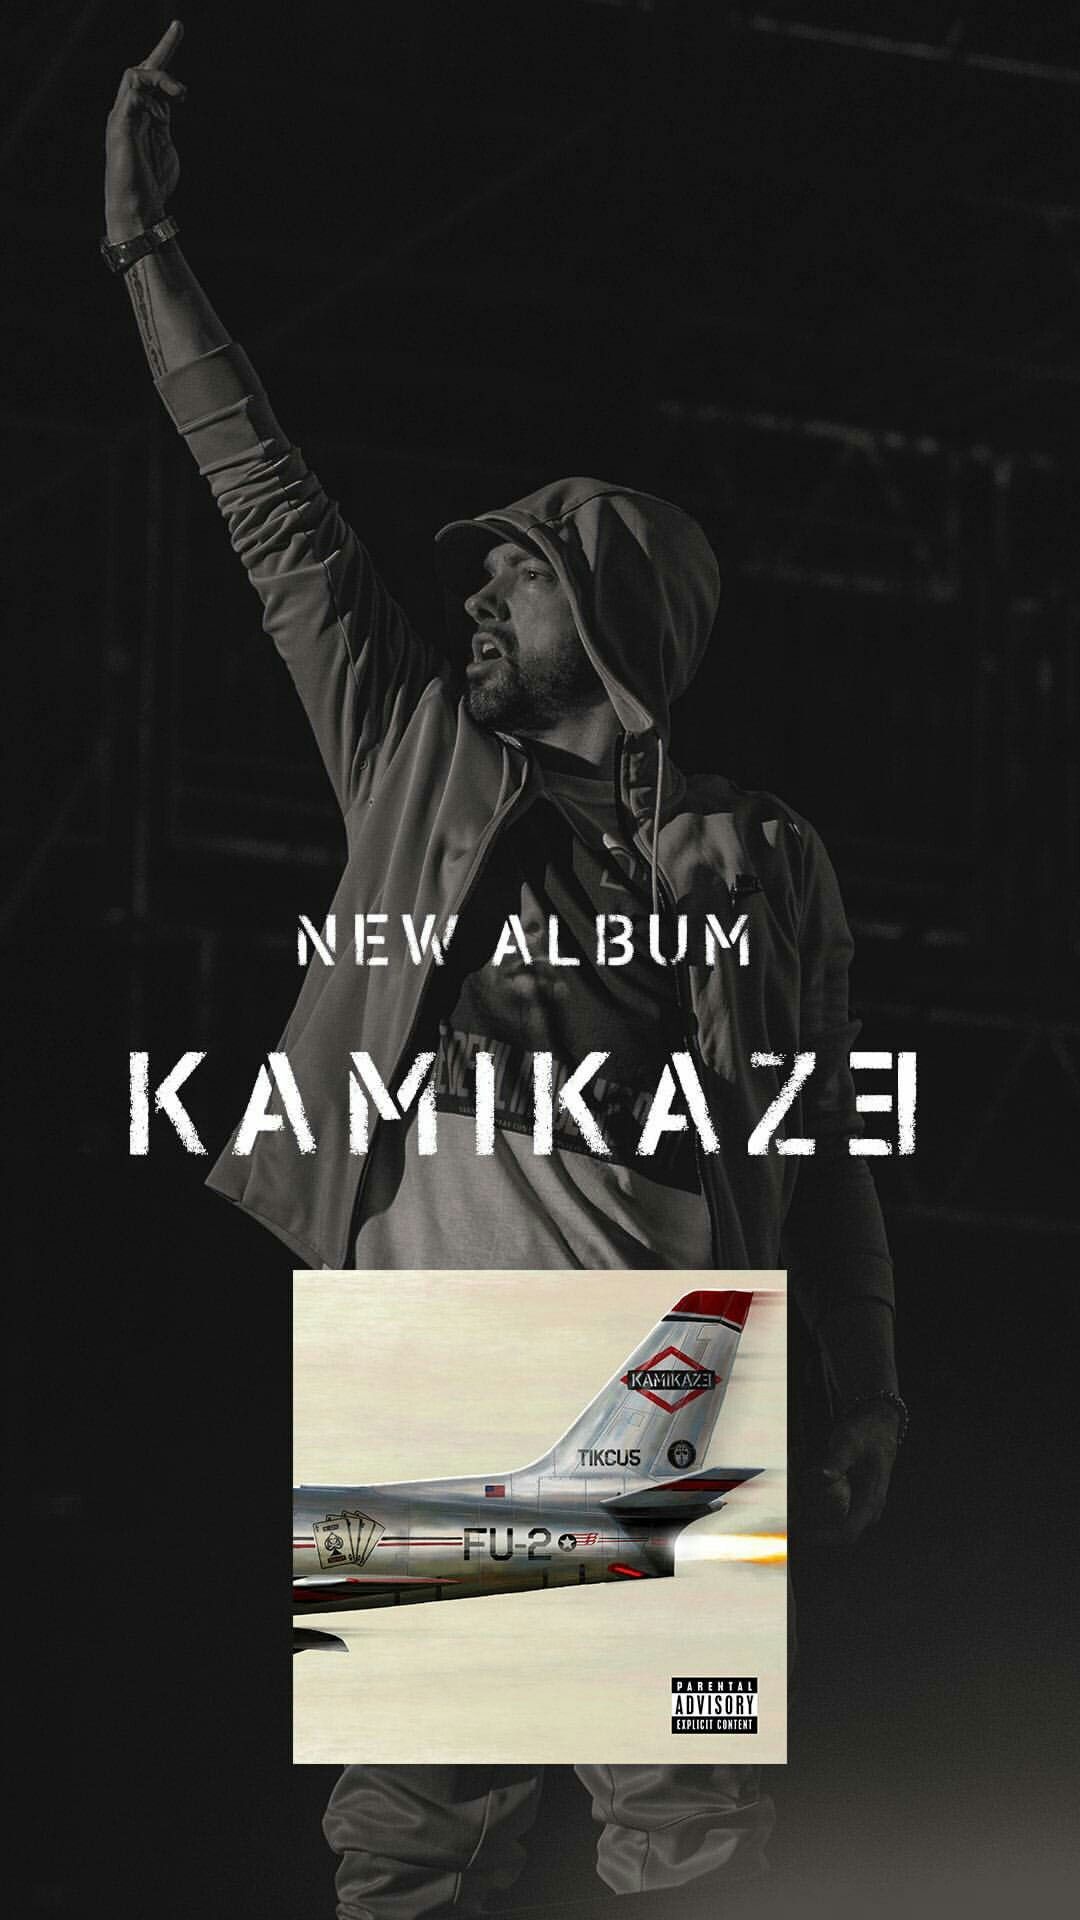 carta da parati kamikaze,manifesto,aereo,font,linea aerea,fotografia